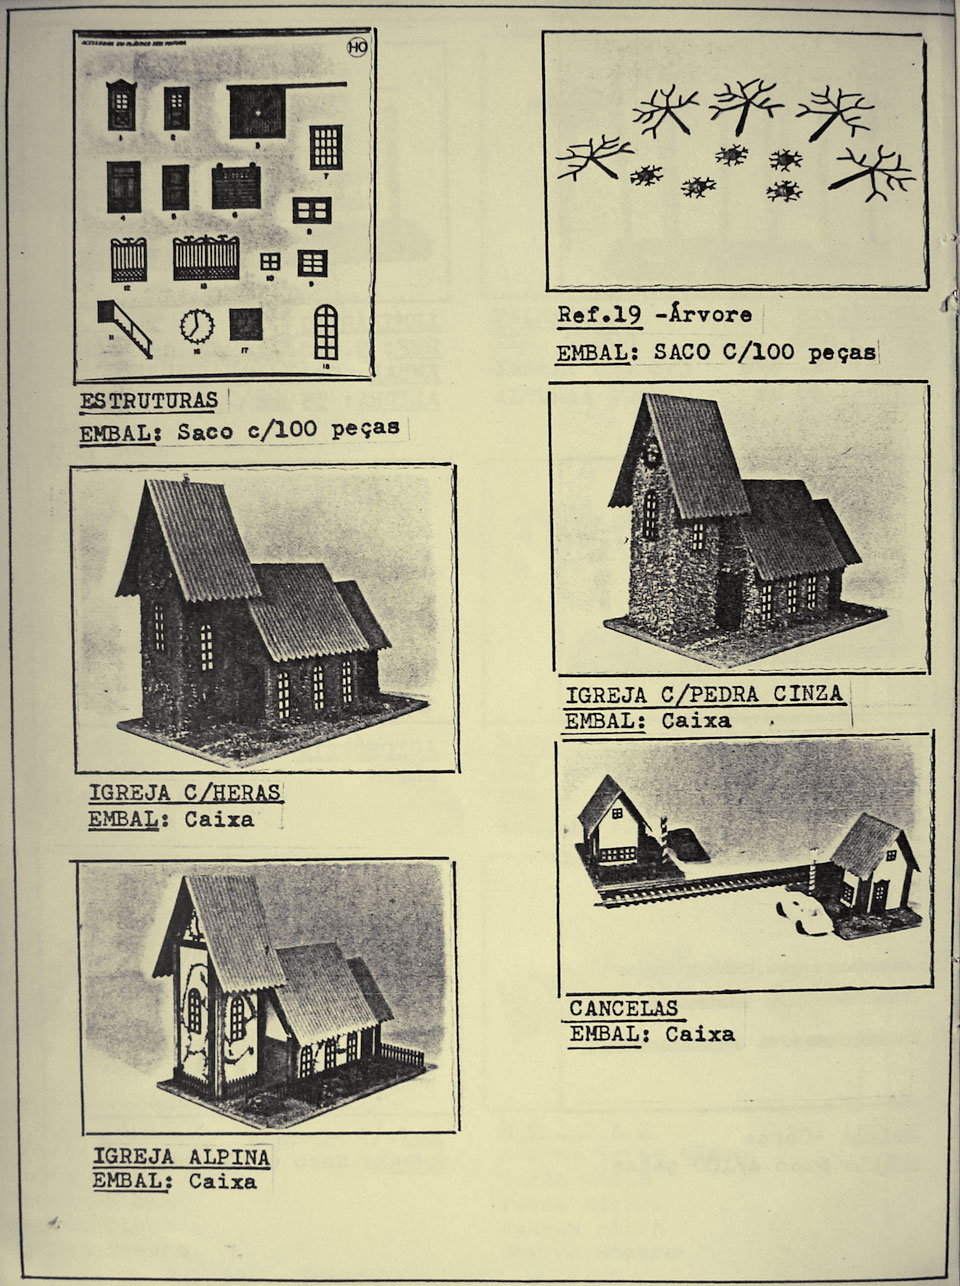 Página 12 do catálogo da Miniaturas Artesanais, apresentando as estruturas e construções para maquetes de ferreomodelismo